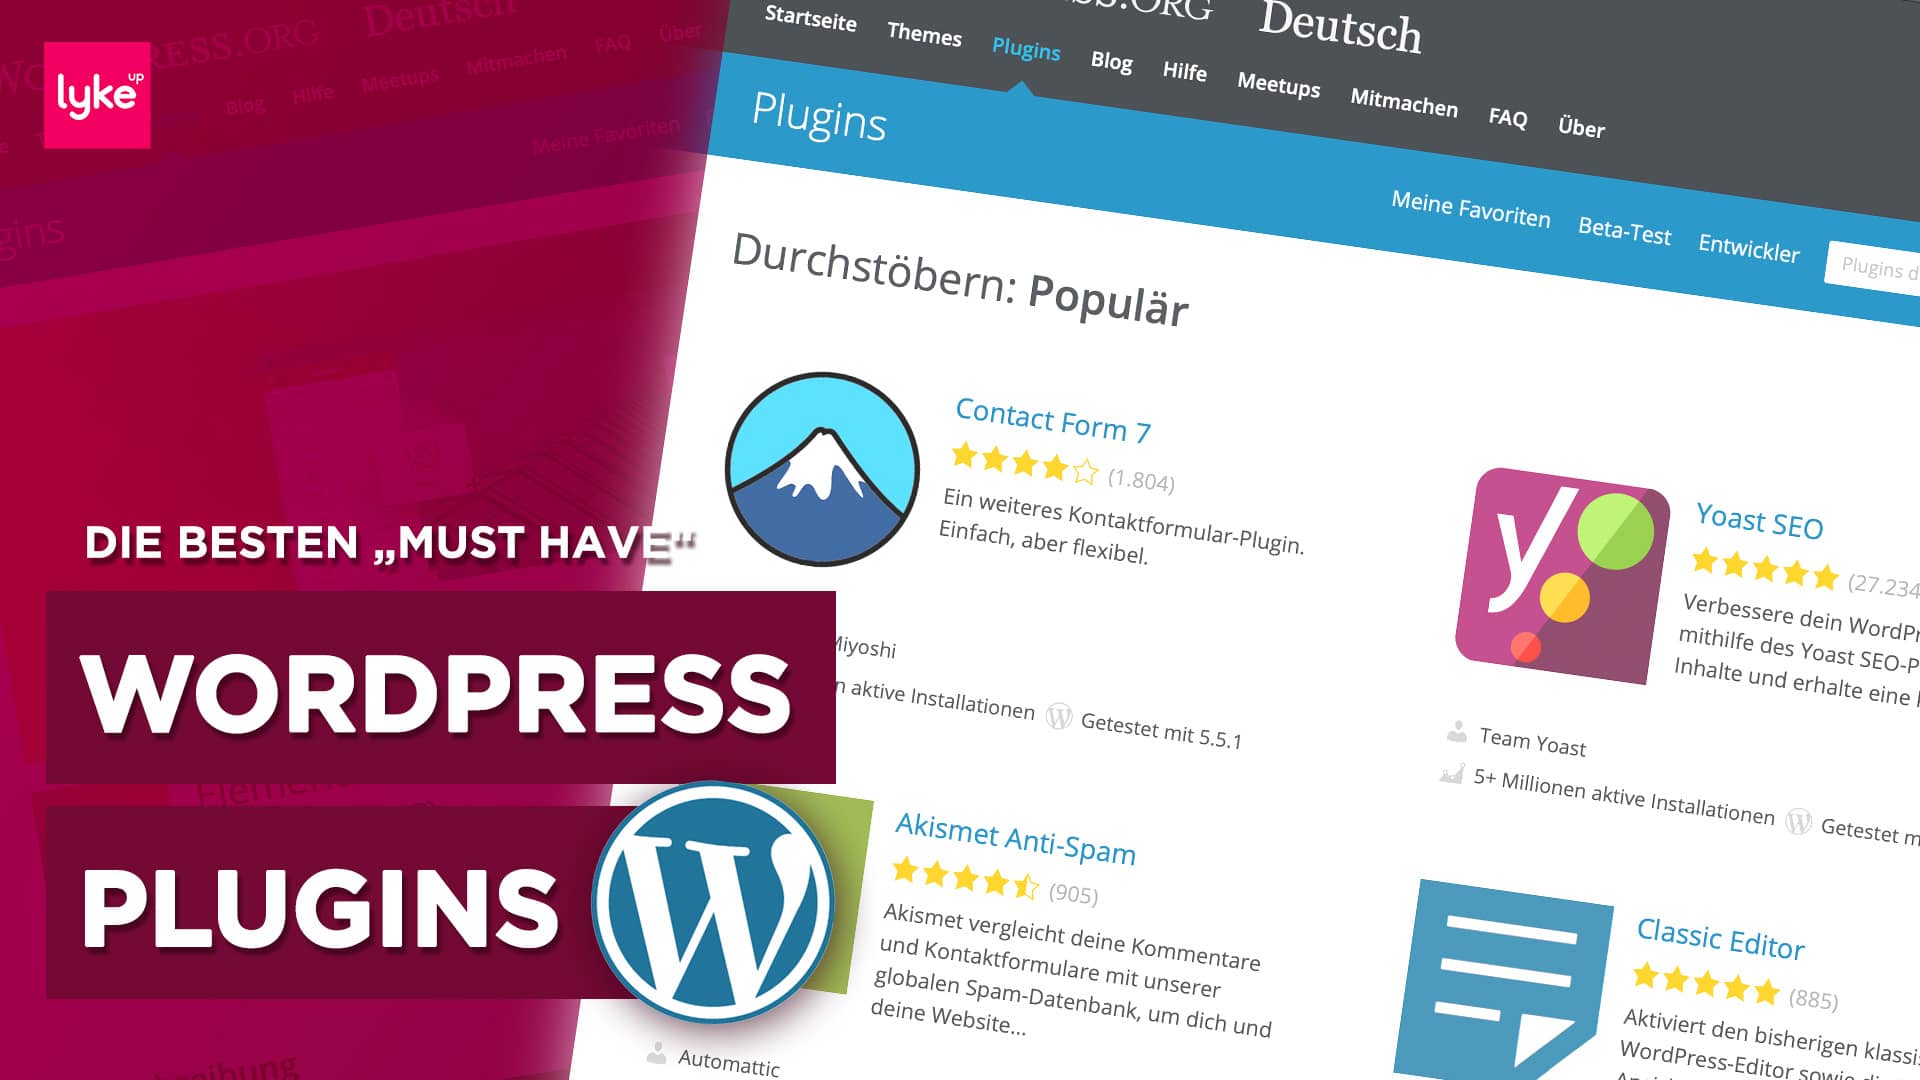 Die besten WordPress Plugins